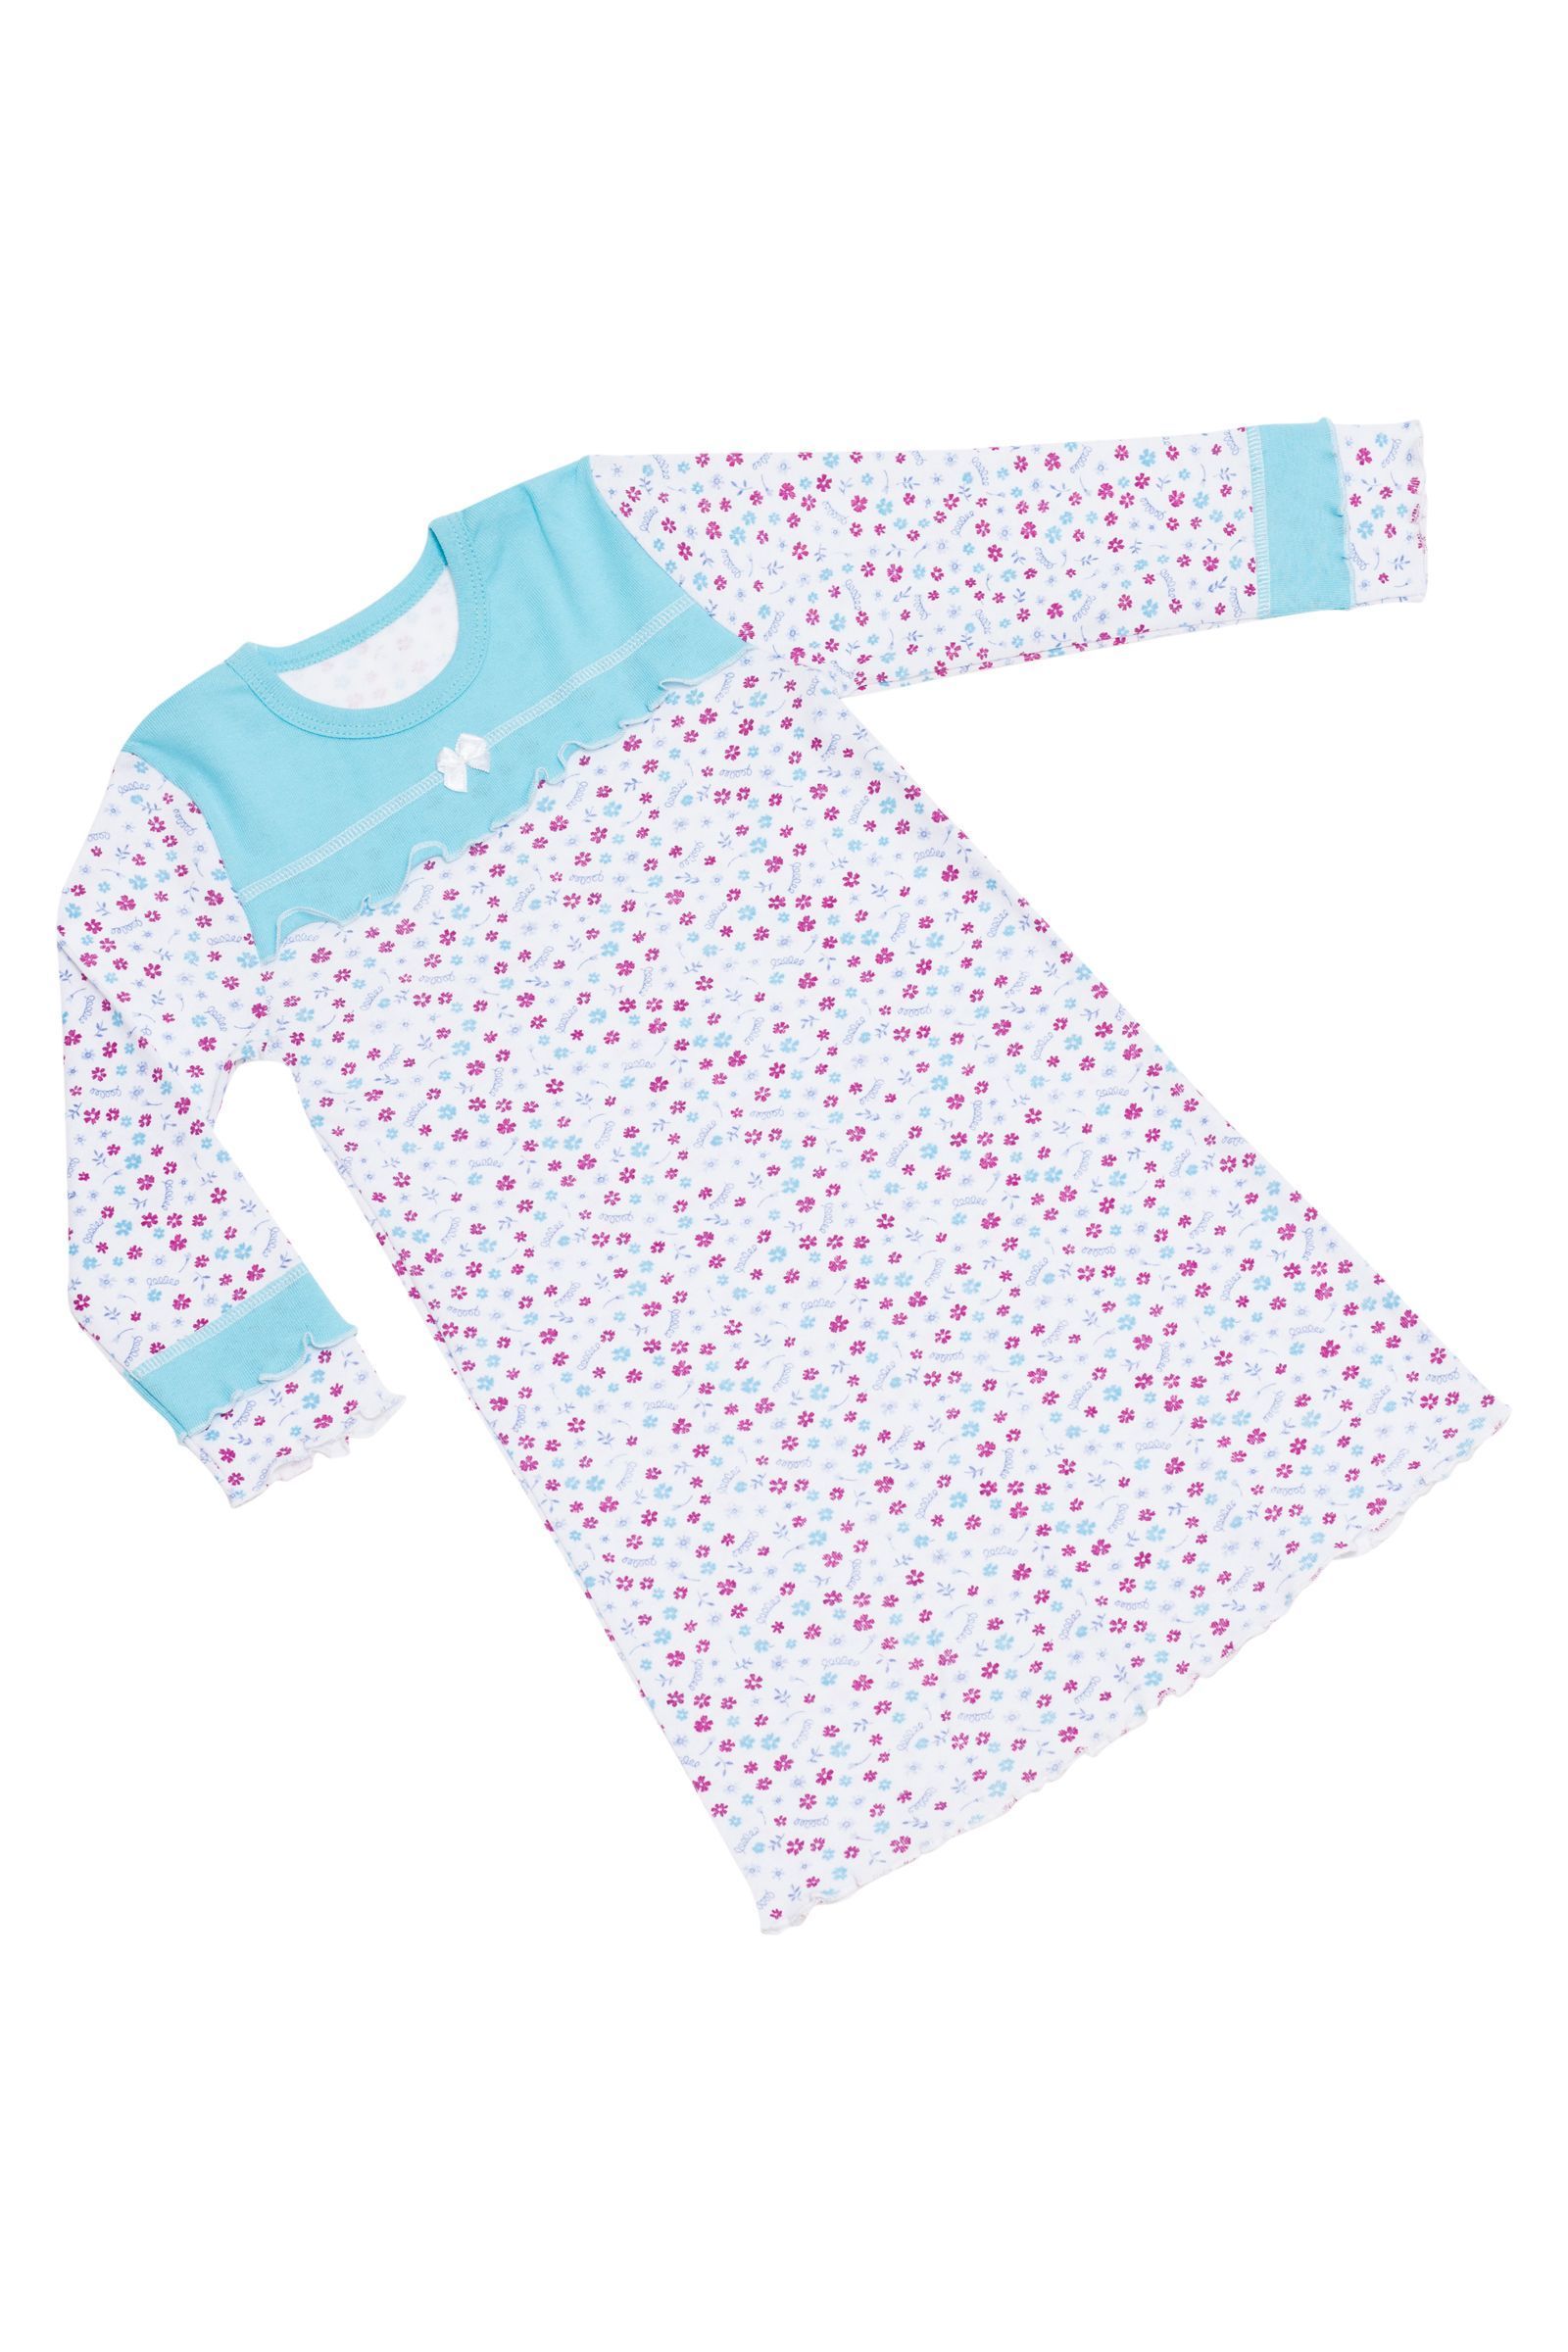 Ночная сорочка-СР03-727 оптом от производителя детской одежды 'Алёна'